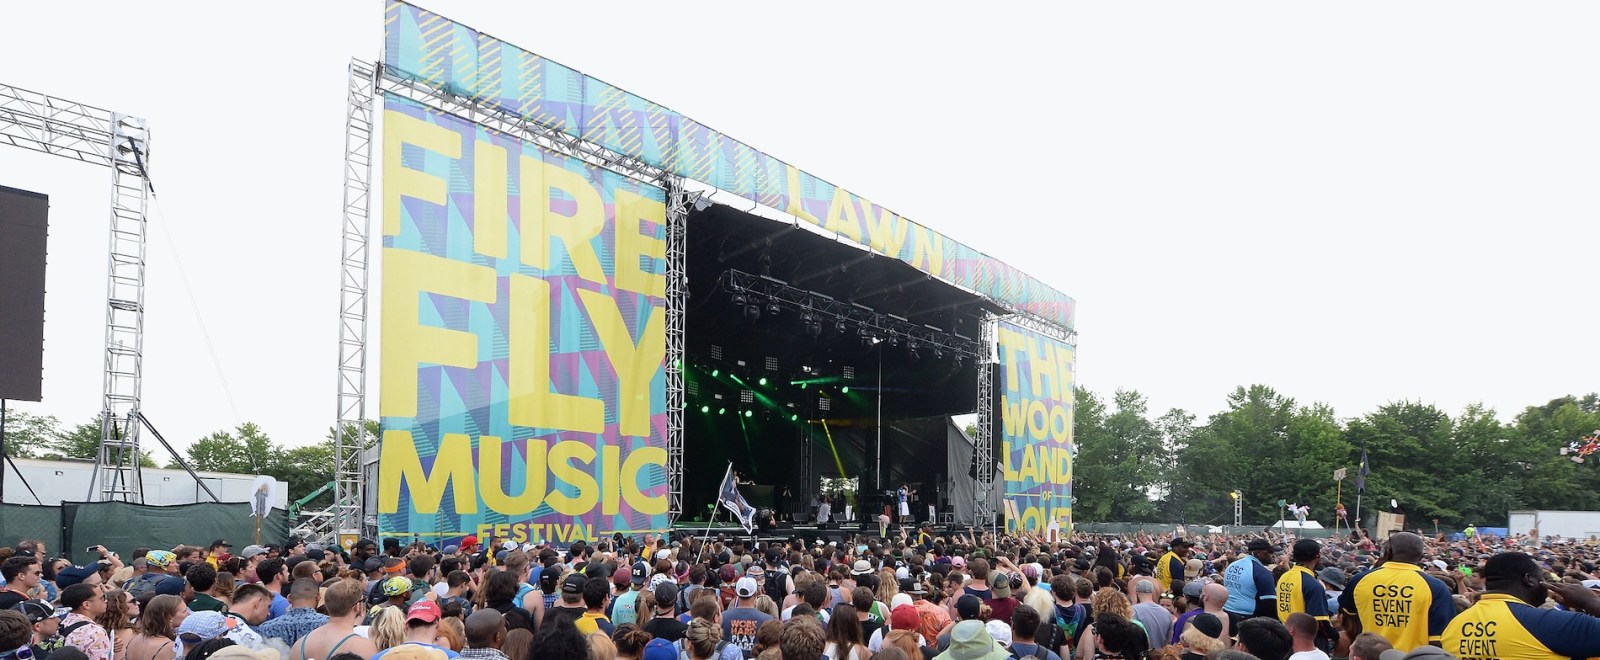 firefly-music-festival-getty-full.jpg